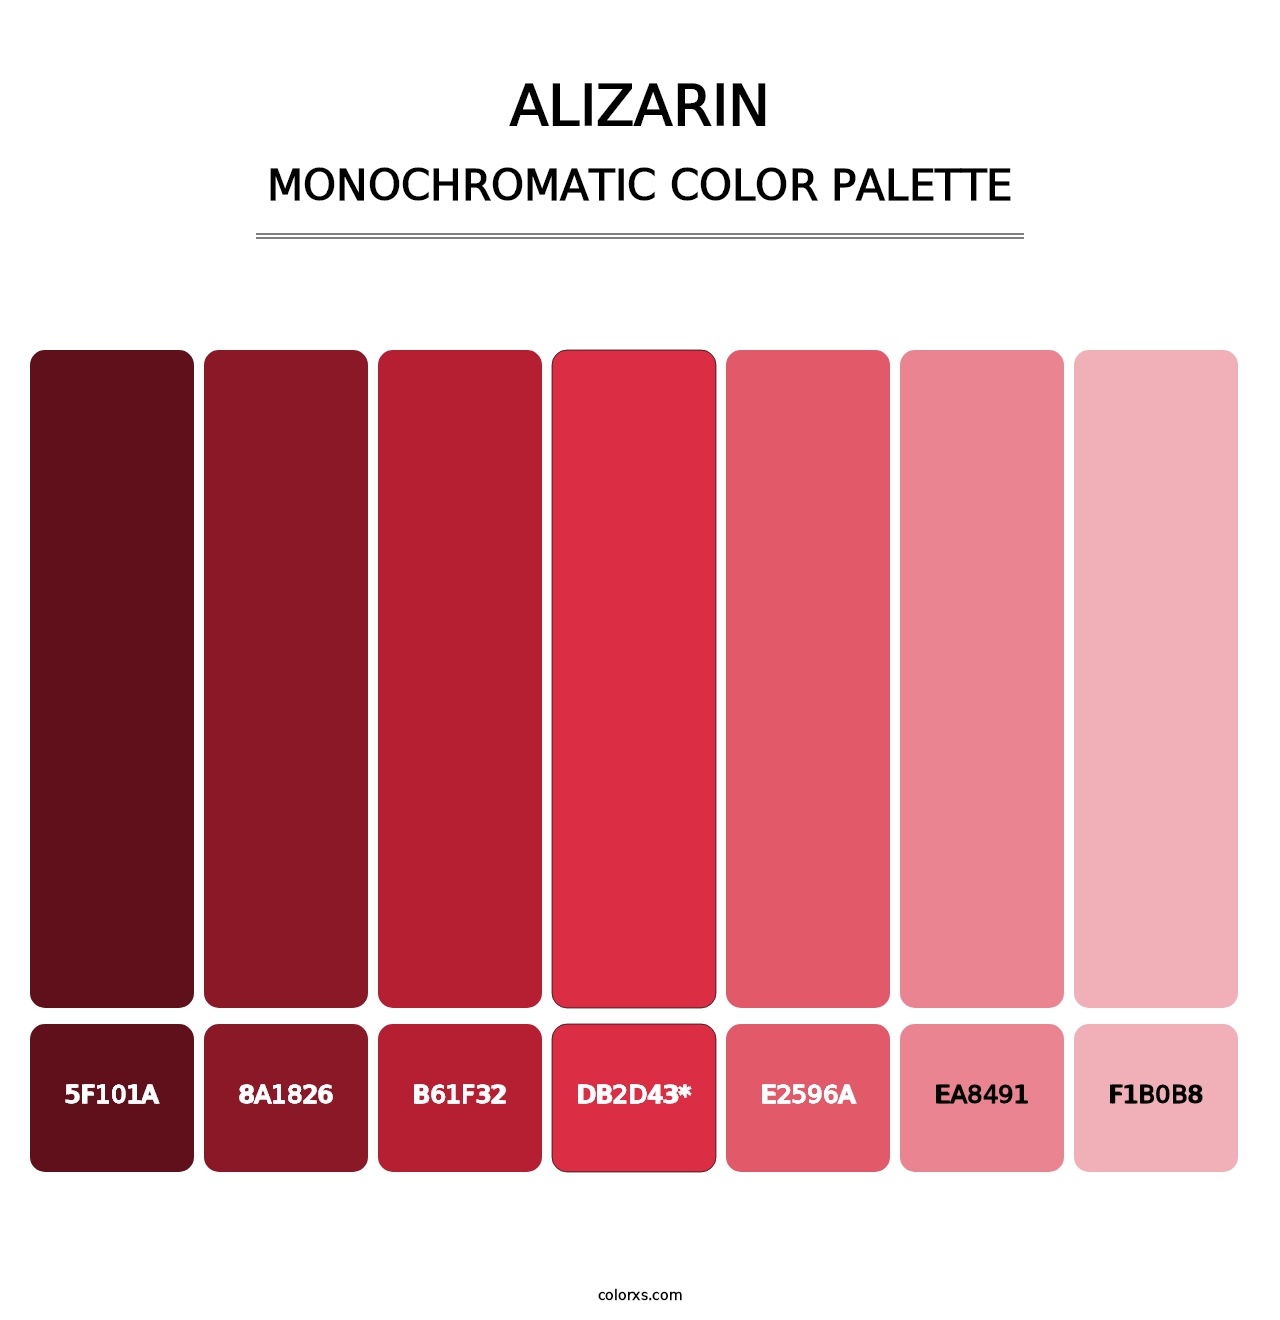 Alizarin - Monochromatic Color Palette